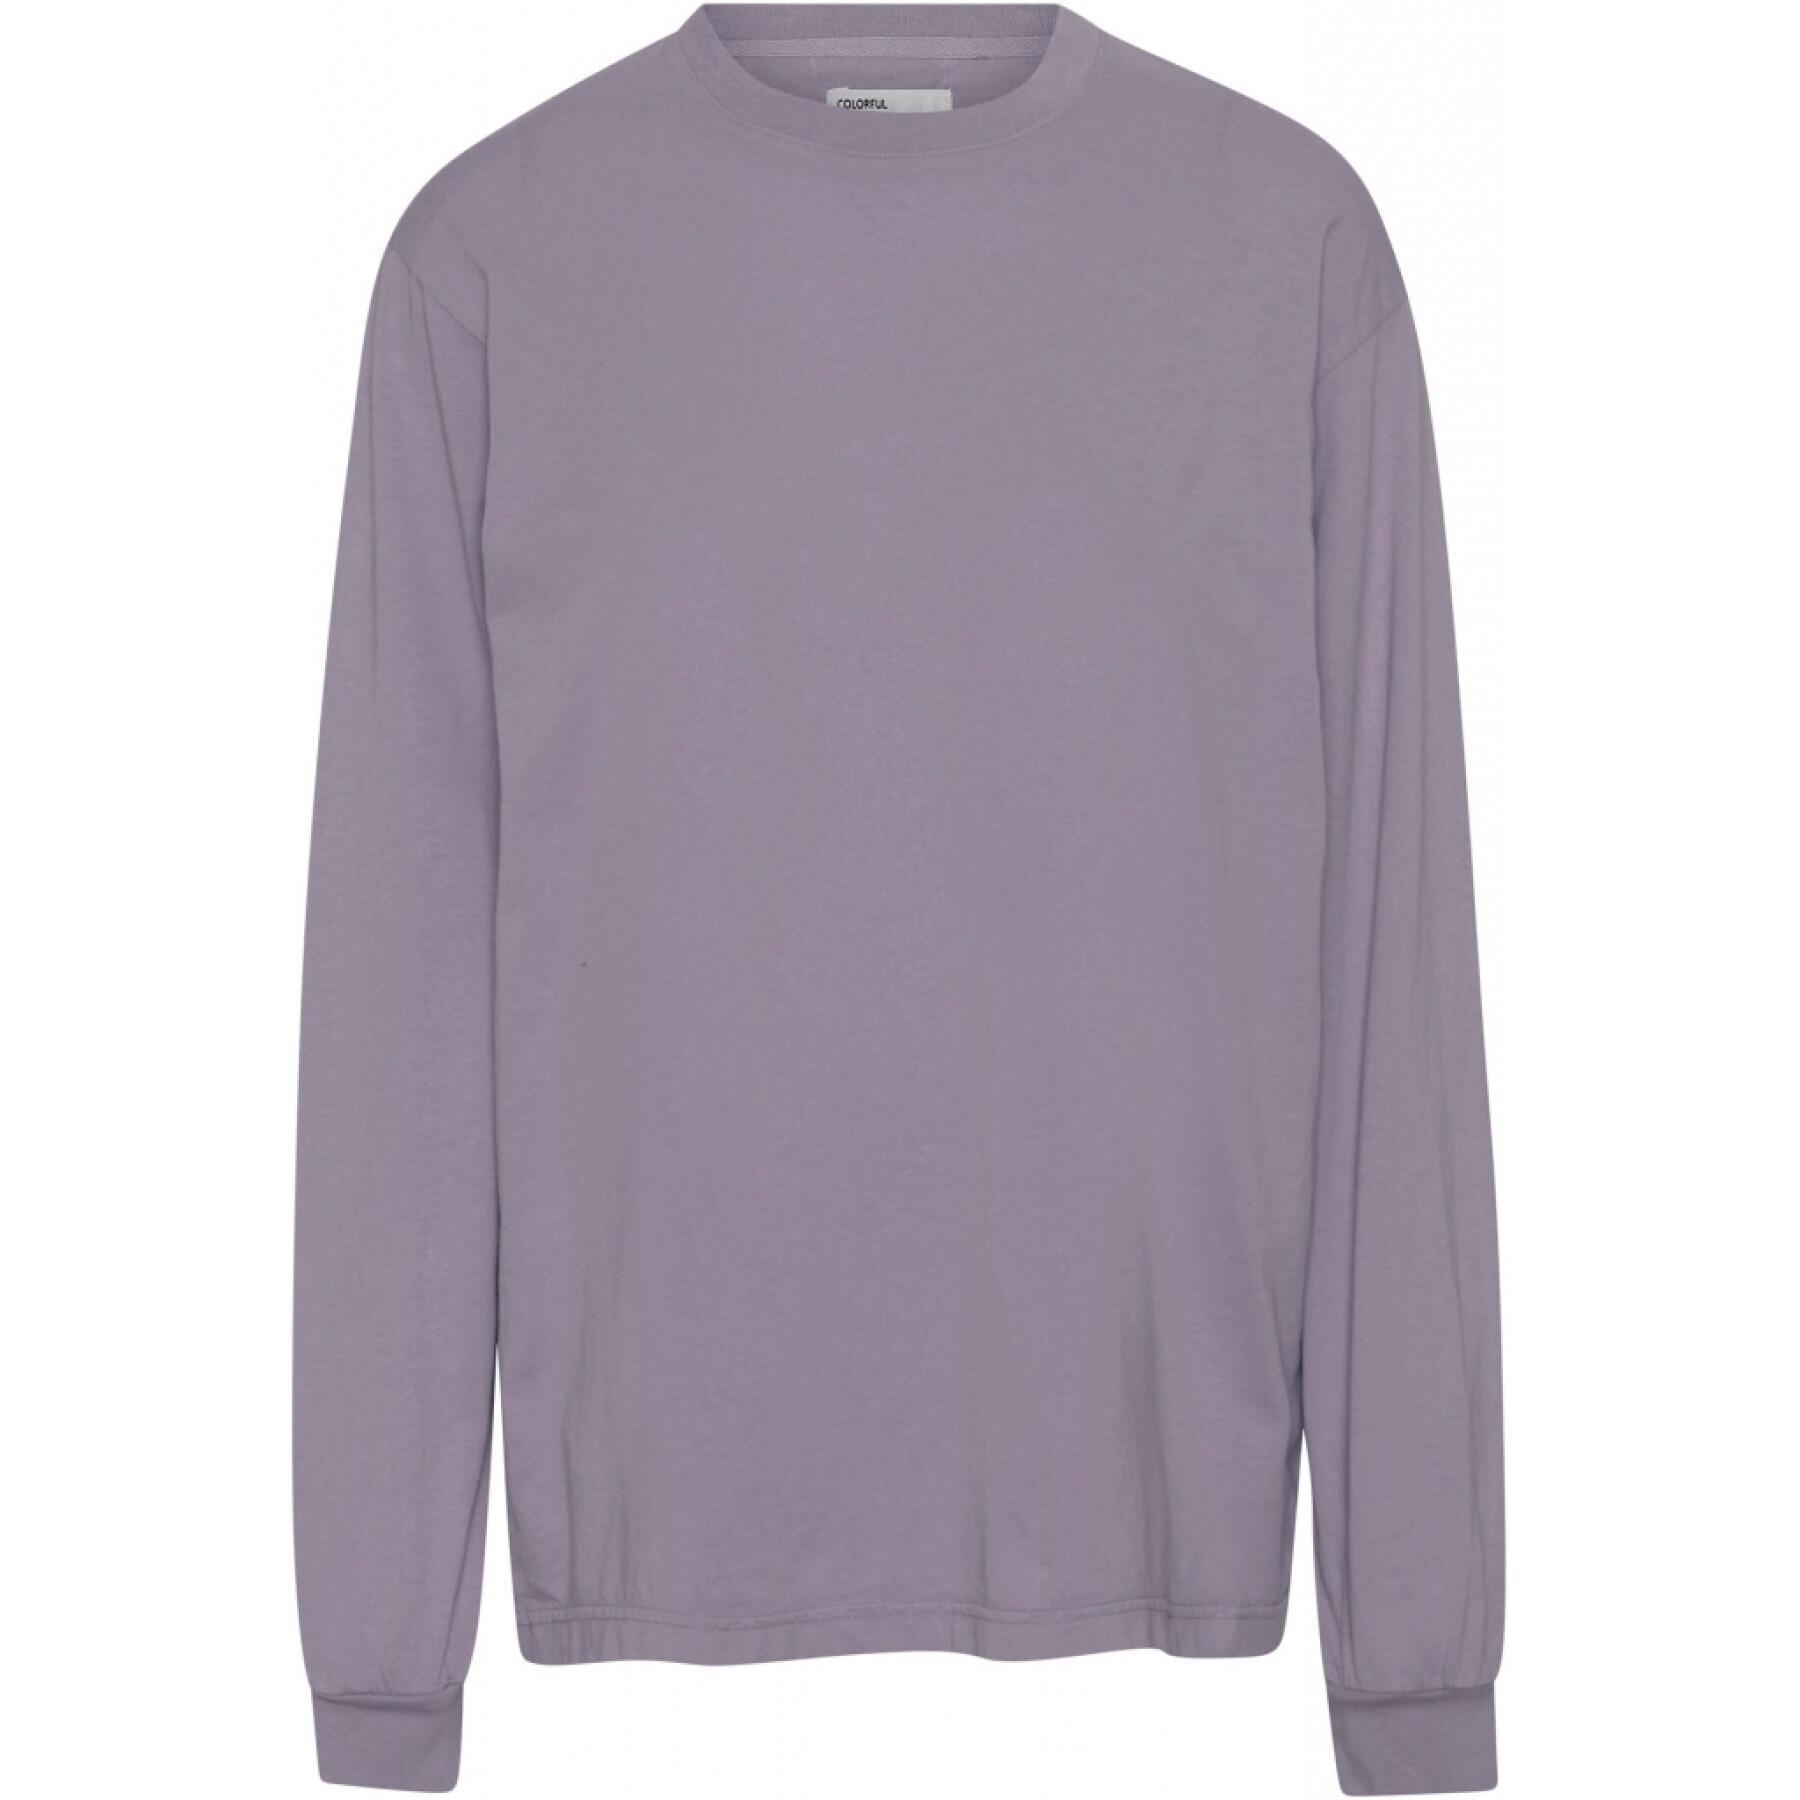 Maglietta a maniche lunghe Colorful Standard Organic oversized purple haze